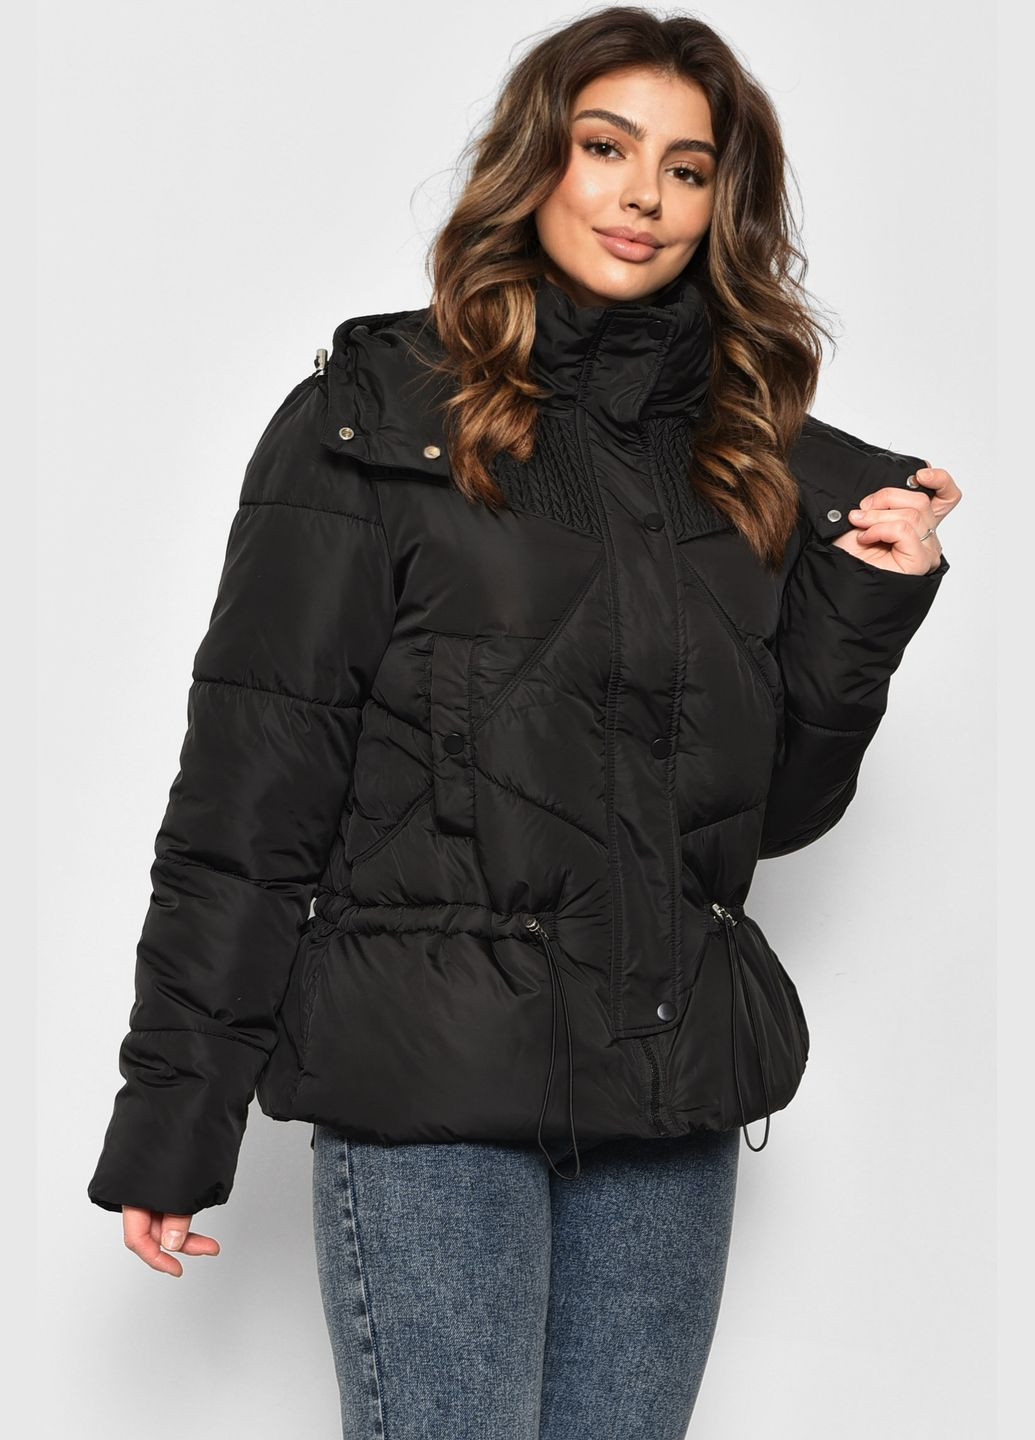 Черная зимняя куртка женская еврозима черного цвета Let's Shop